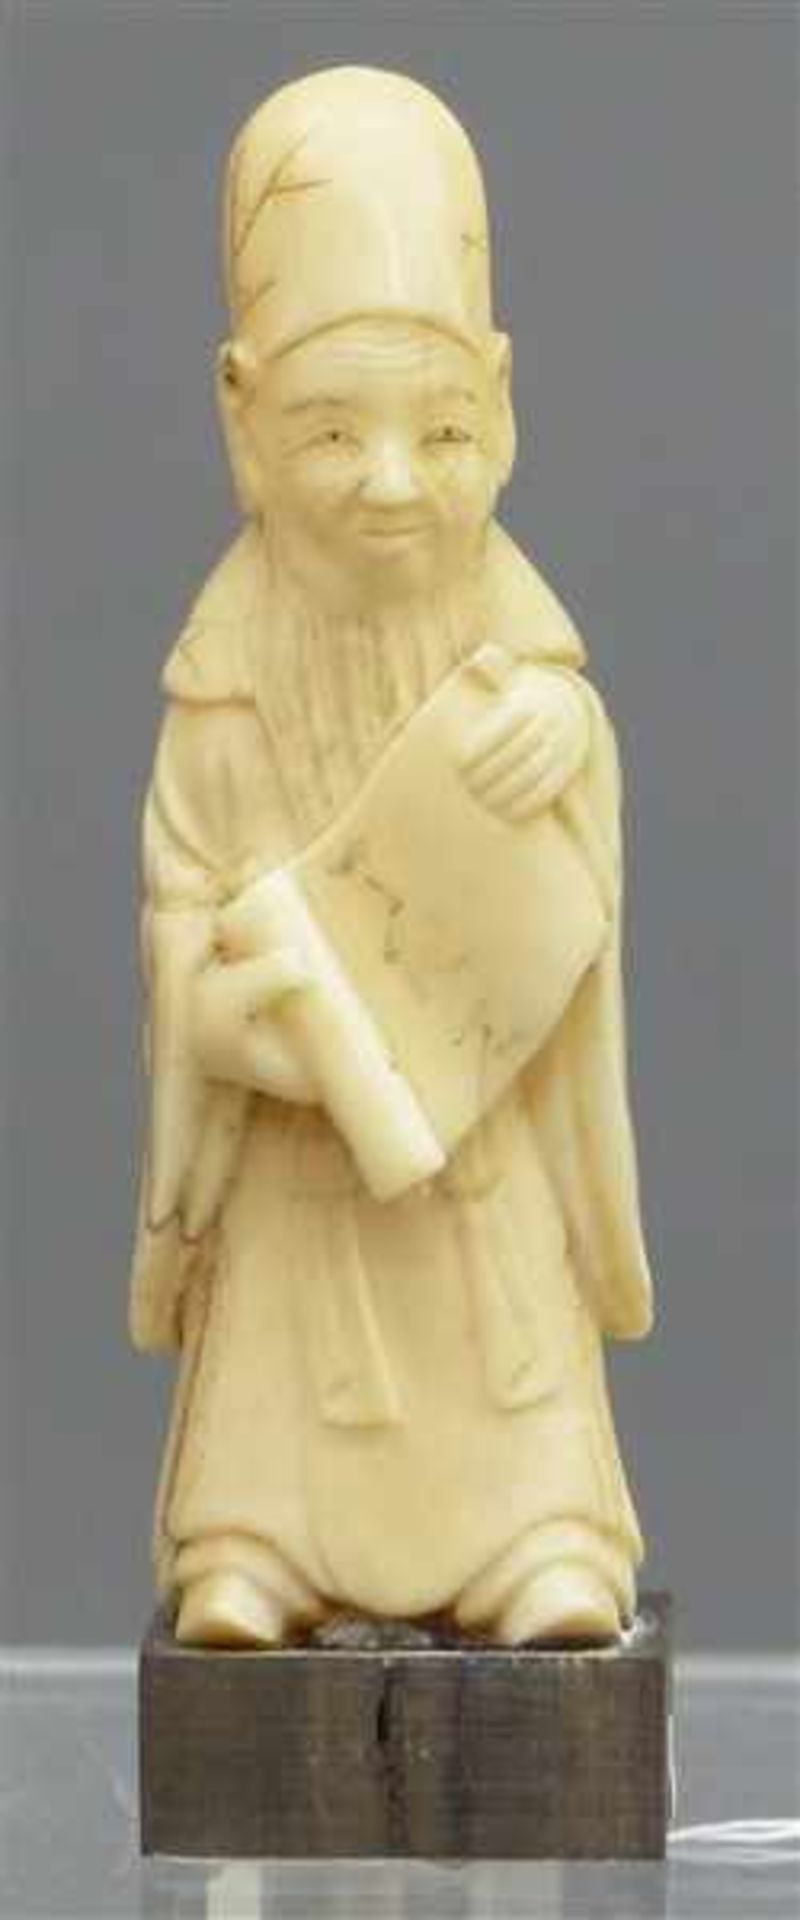 SkulpturElfenbein, 19. Jh., betender Mönch, auf Holzsockel, h 9,5 cm,